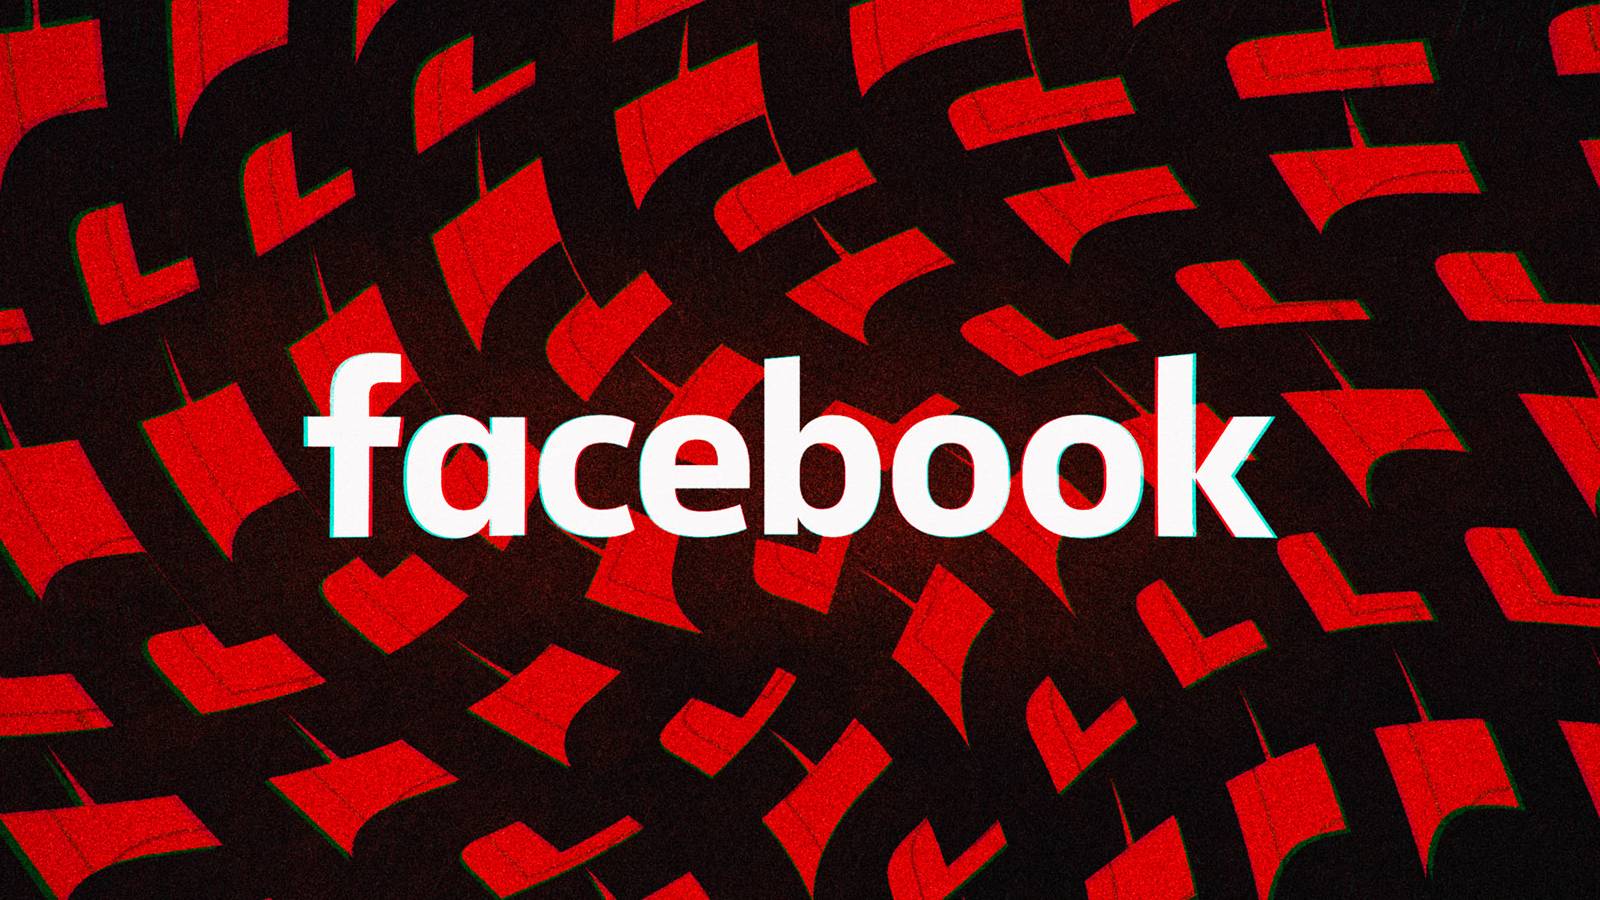 Facebook costretto a limitare le spiegazioni degli utenti